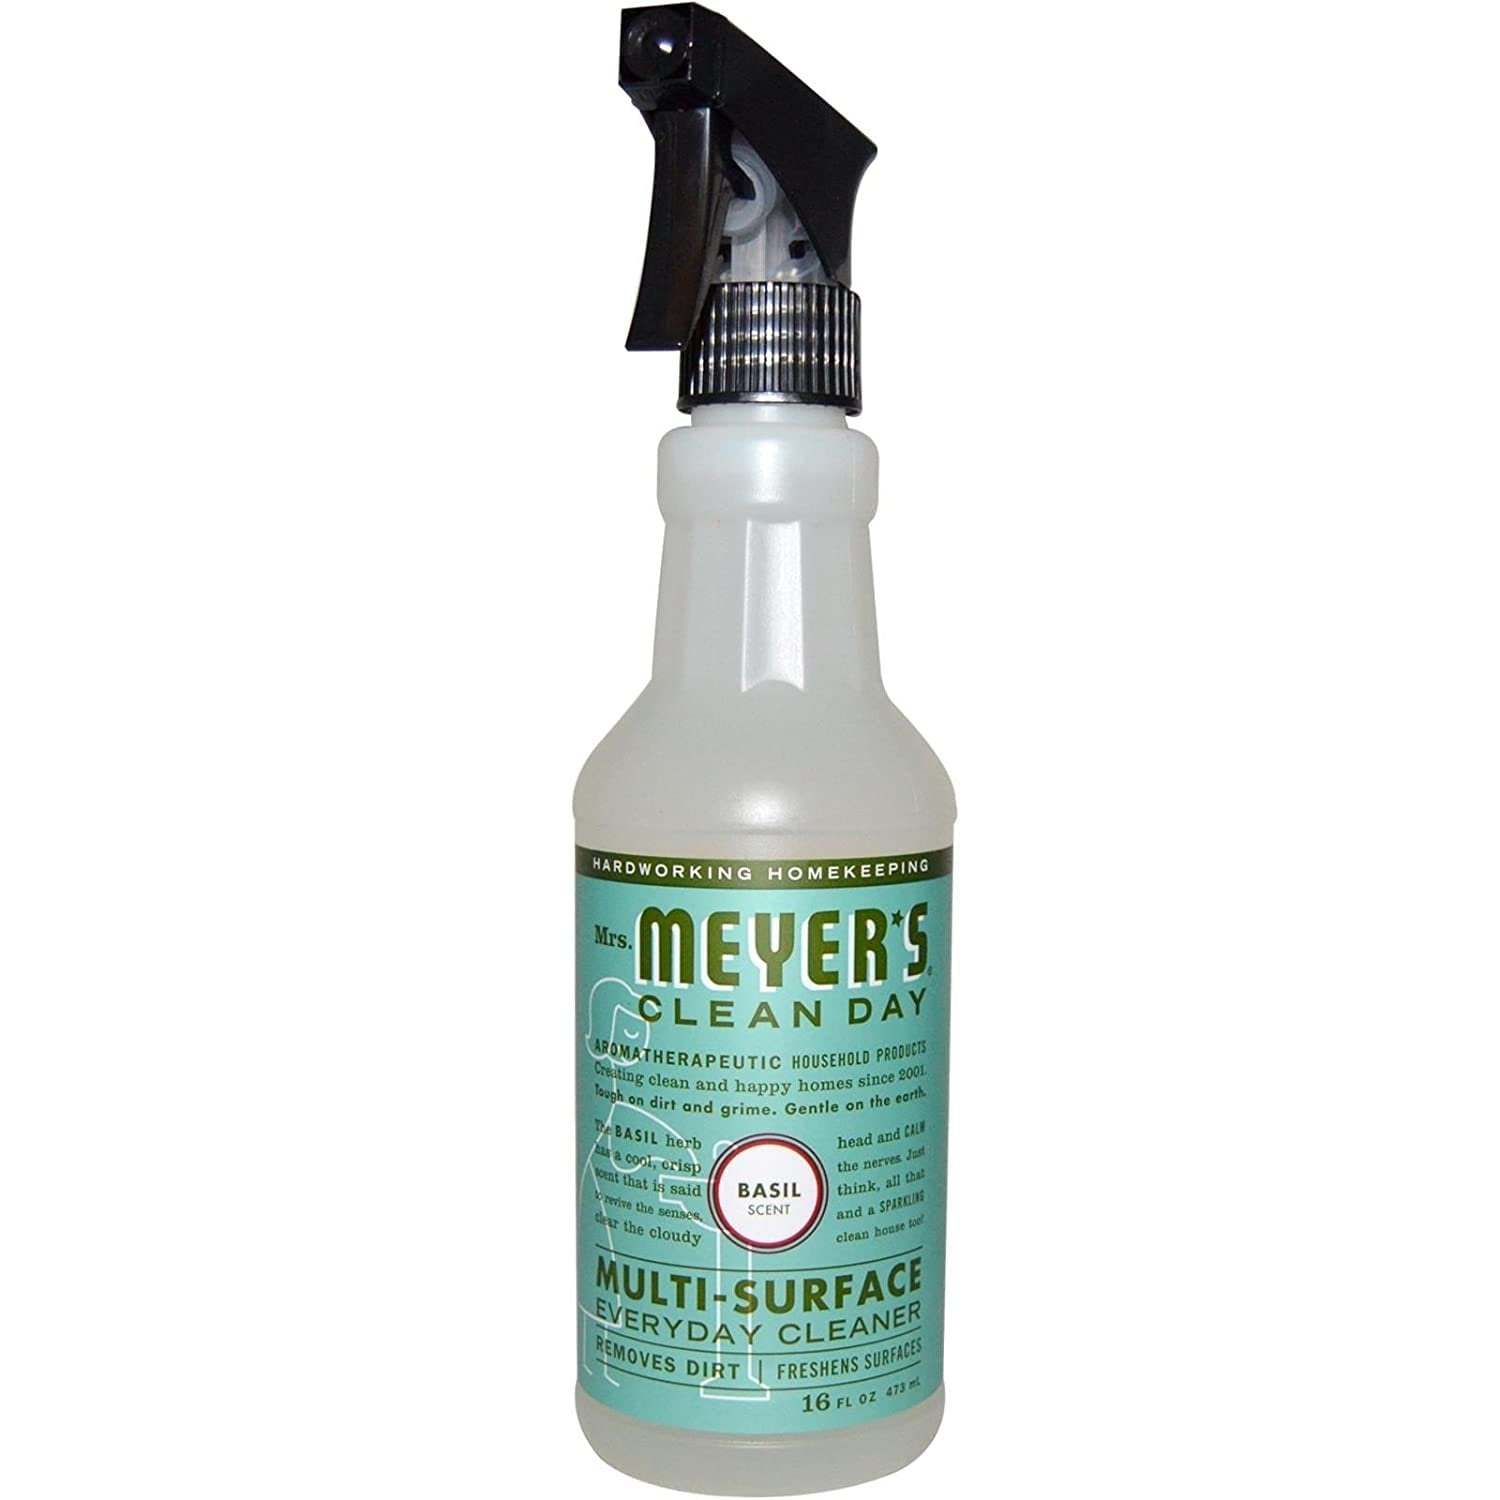  Mrs. Meyer's All-Purpose Cleaner Spray, Basil, 16 fl